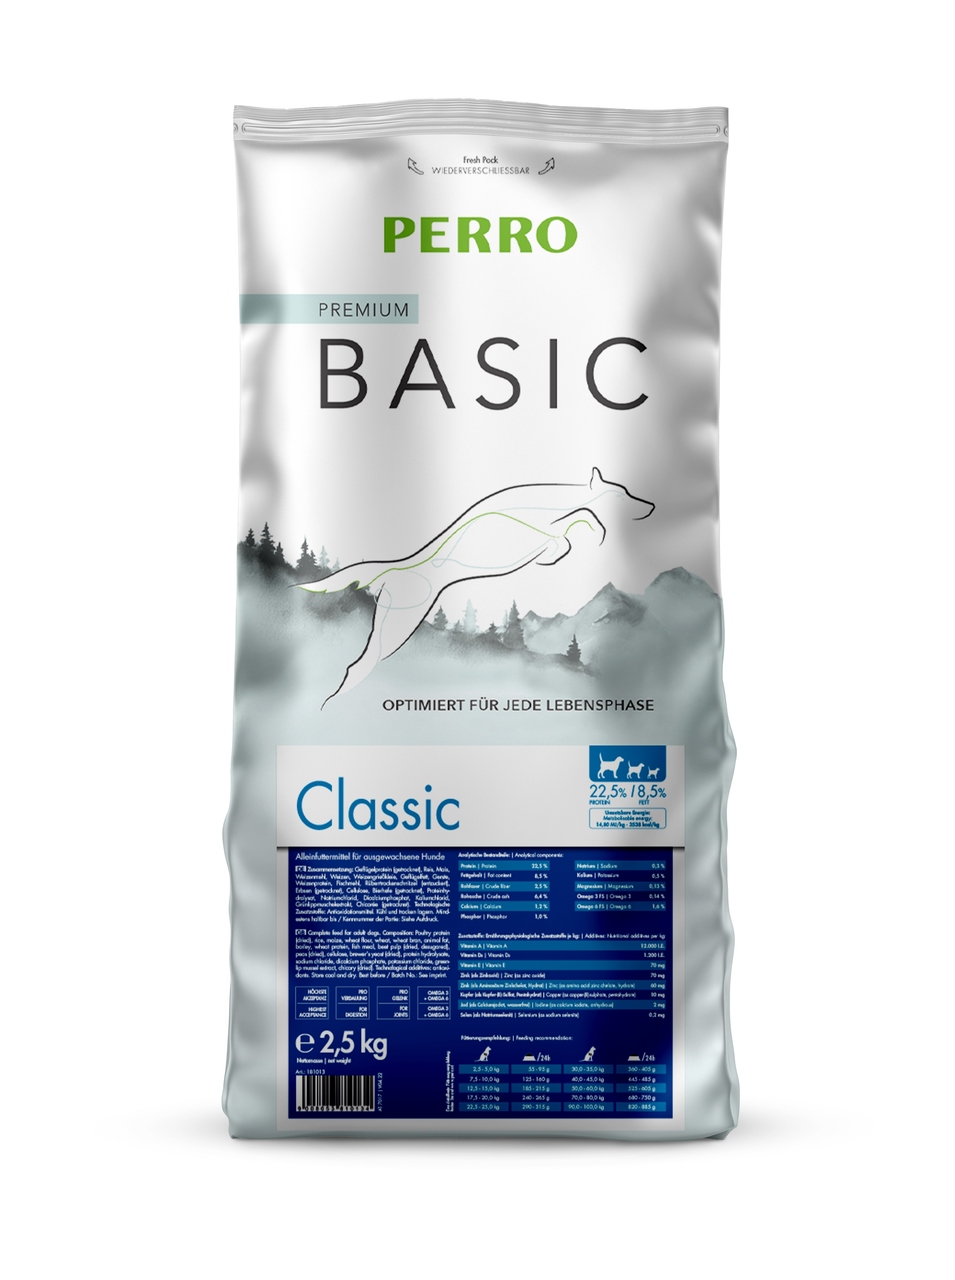 PERRO Basic Classic